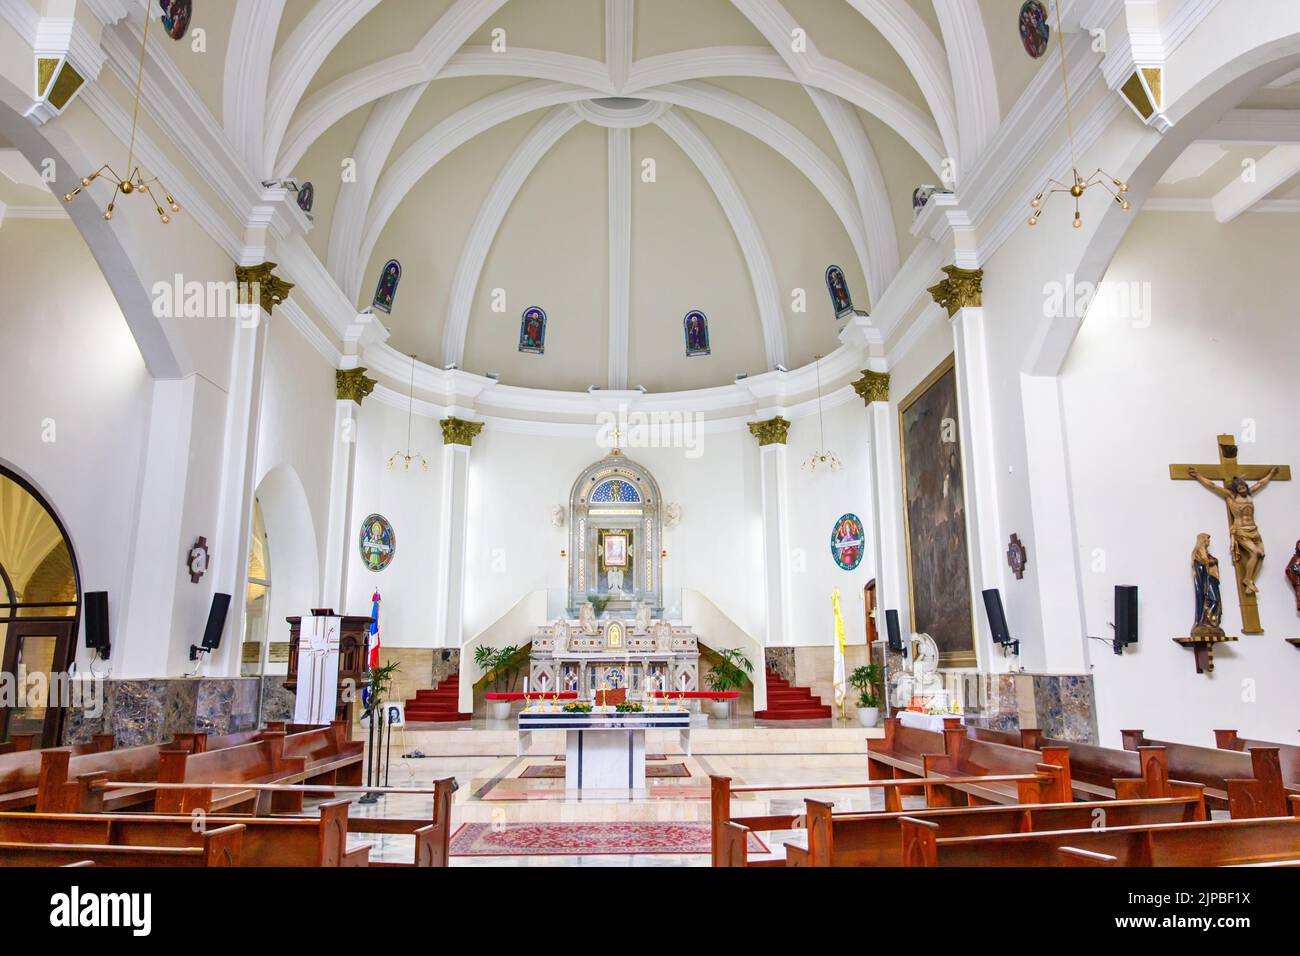 30.06.2022 SANTO DOMINGO, DOMINICAN REPUBLIC The interior of a Catholic church. Stock Photo